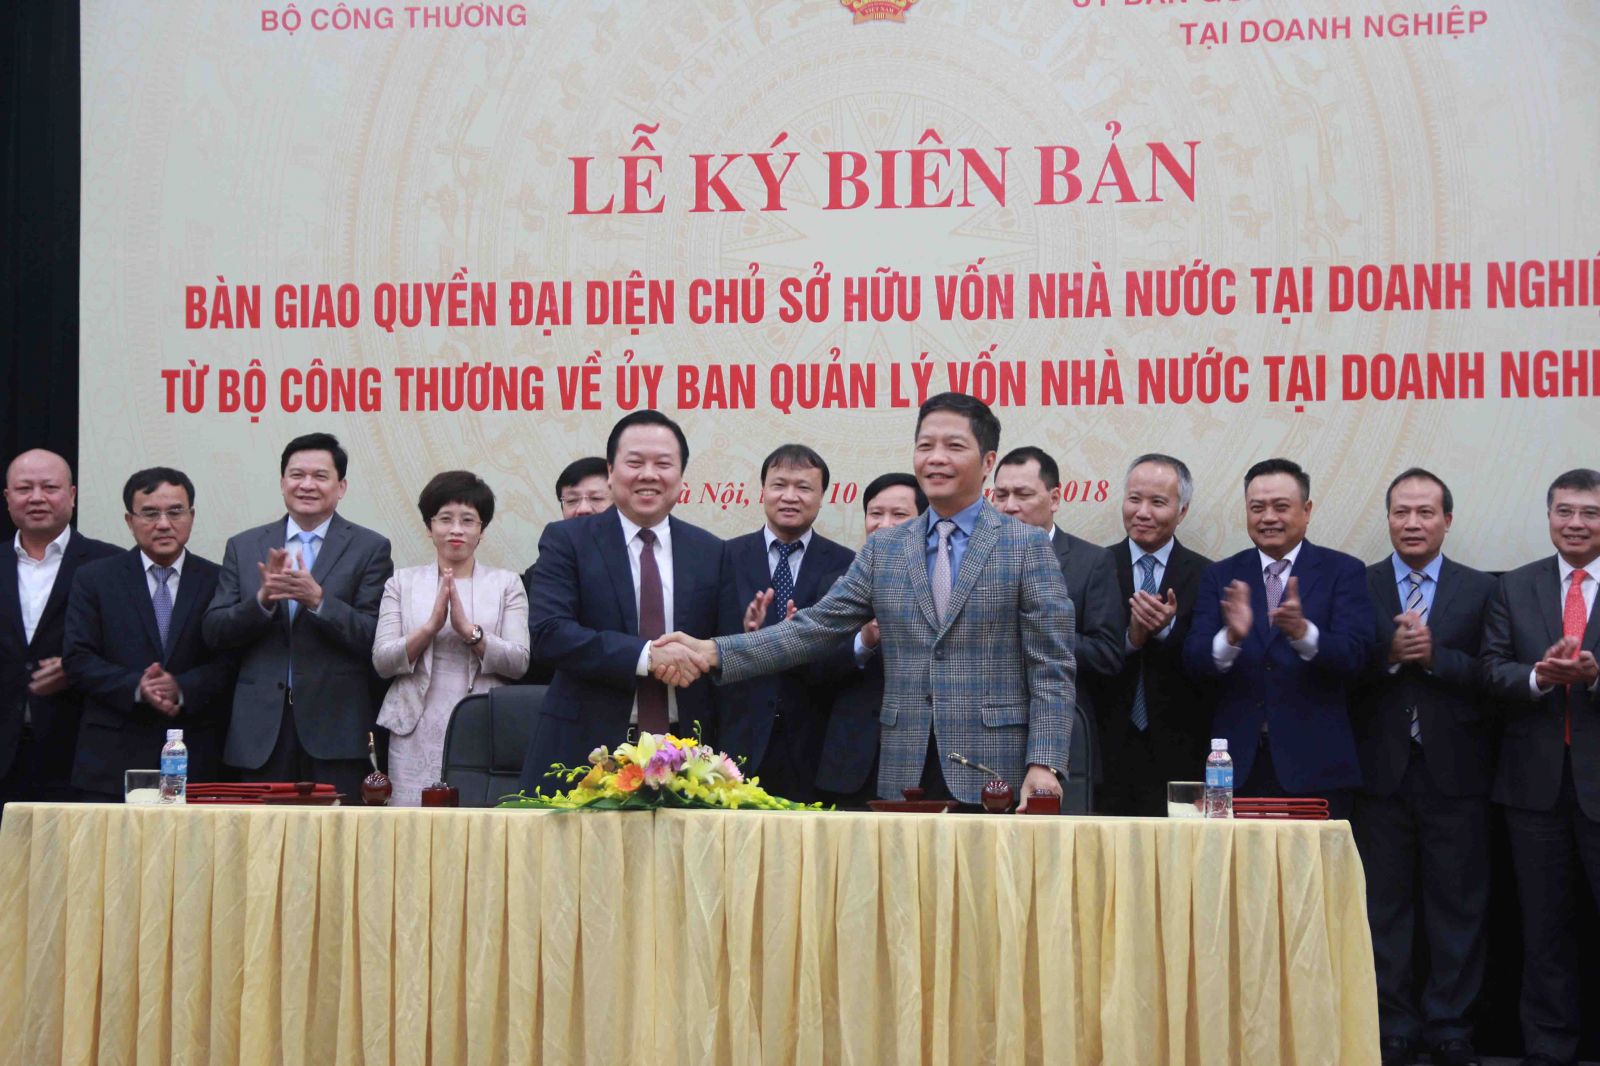 Bộ trưởng Trần Tuấn Anh và Chủ tịch Ủy ban Nguyễn Hoàng Anh ký kết văn bản bàn giao, đánh dấu chính thức quyền đại diện chủ sở hữu 6 Tập đoàn, Tổng Công ty chuyển sang Ủy ban Quản lý vốn nhà nước tại doanh nghiệp